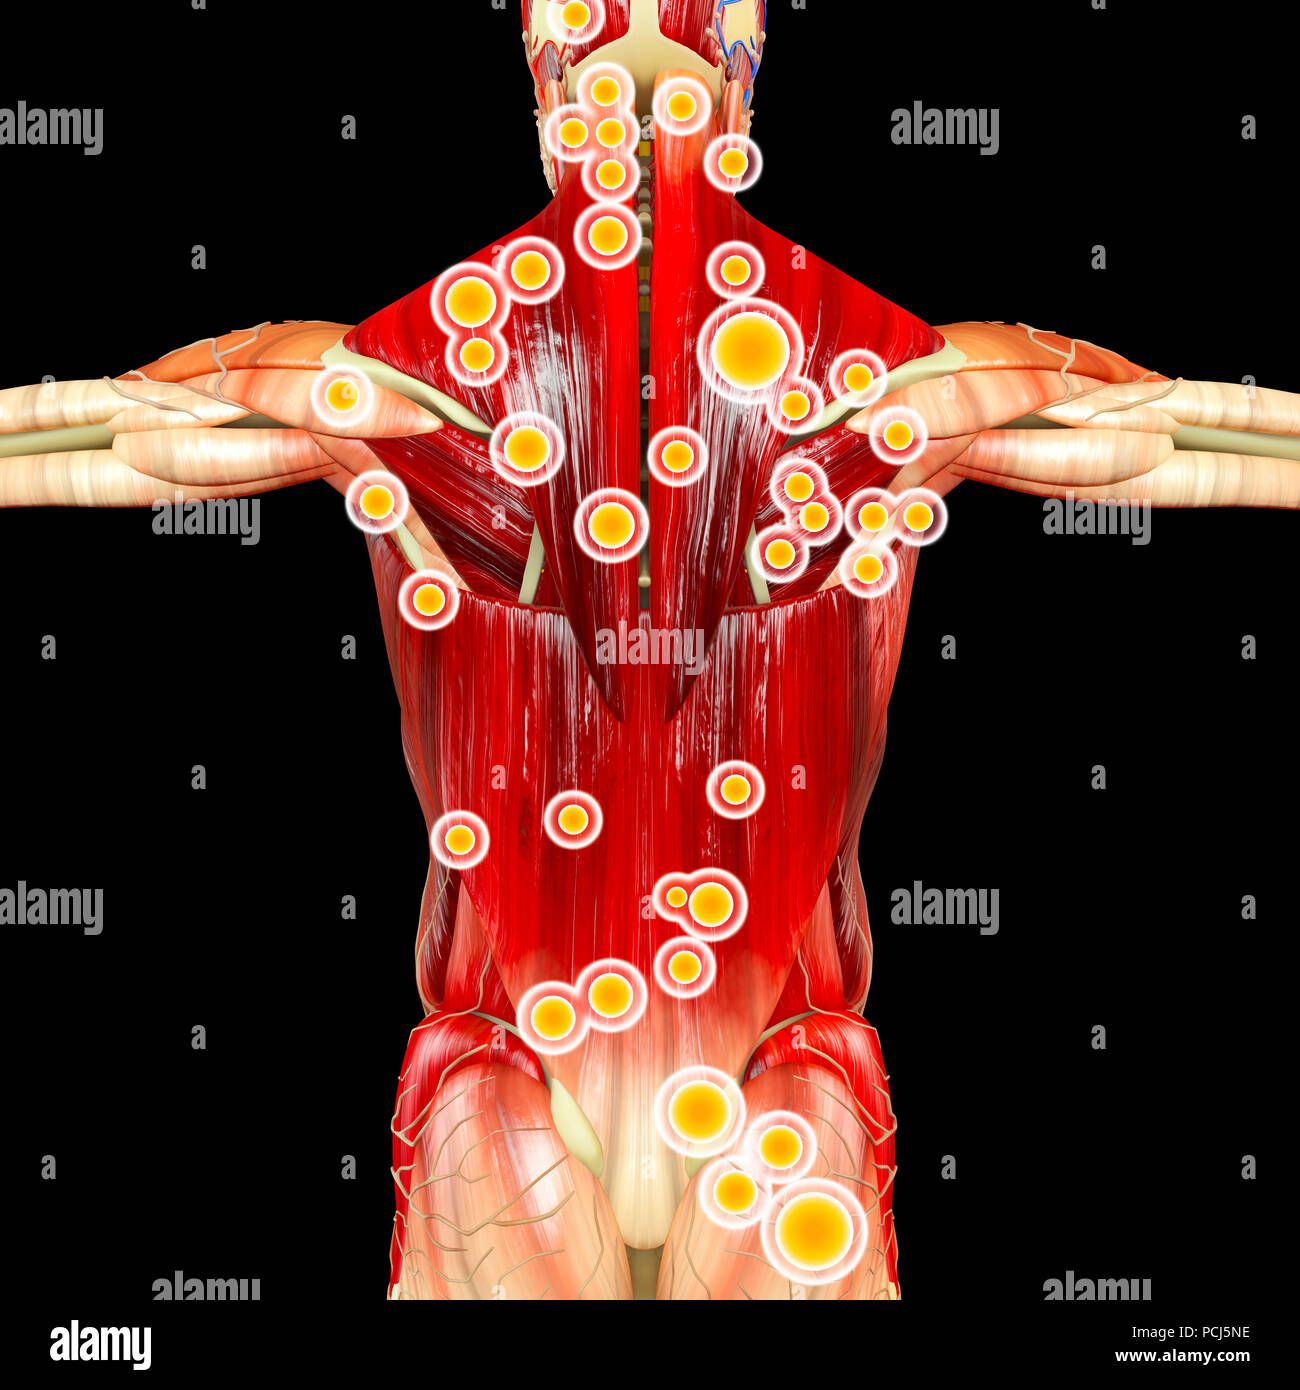 Zurück Blick auf einen Mann und seine Triggerpunkte. Anatomie Muskeln. 3D-Rendering. Myofasziale Triggerpunkte, werden als hyperirritable Spots beschrieben. Stockfoto